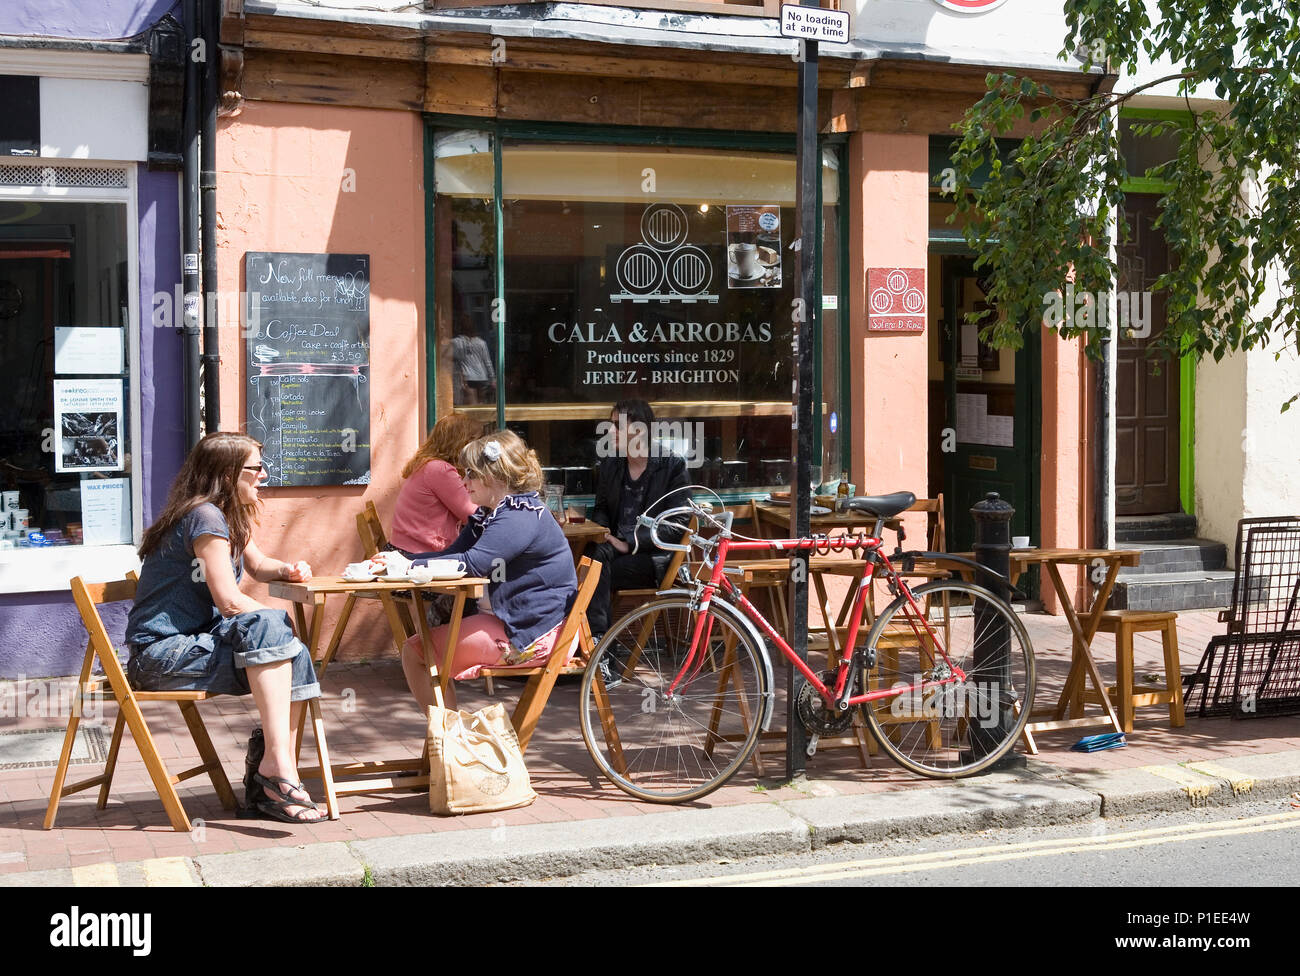 La culture Café du Cala & Arrobas Solera et bar à tapas, Sydney Street, North Laine, Brighton, East Sussex, England, UK Banque D'Images